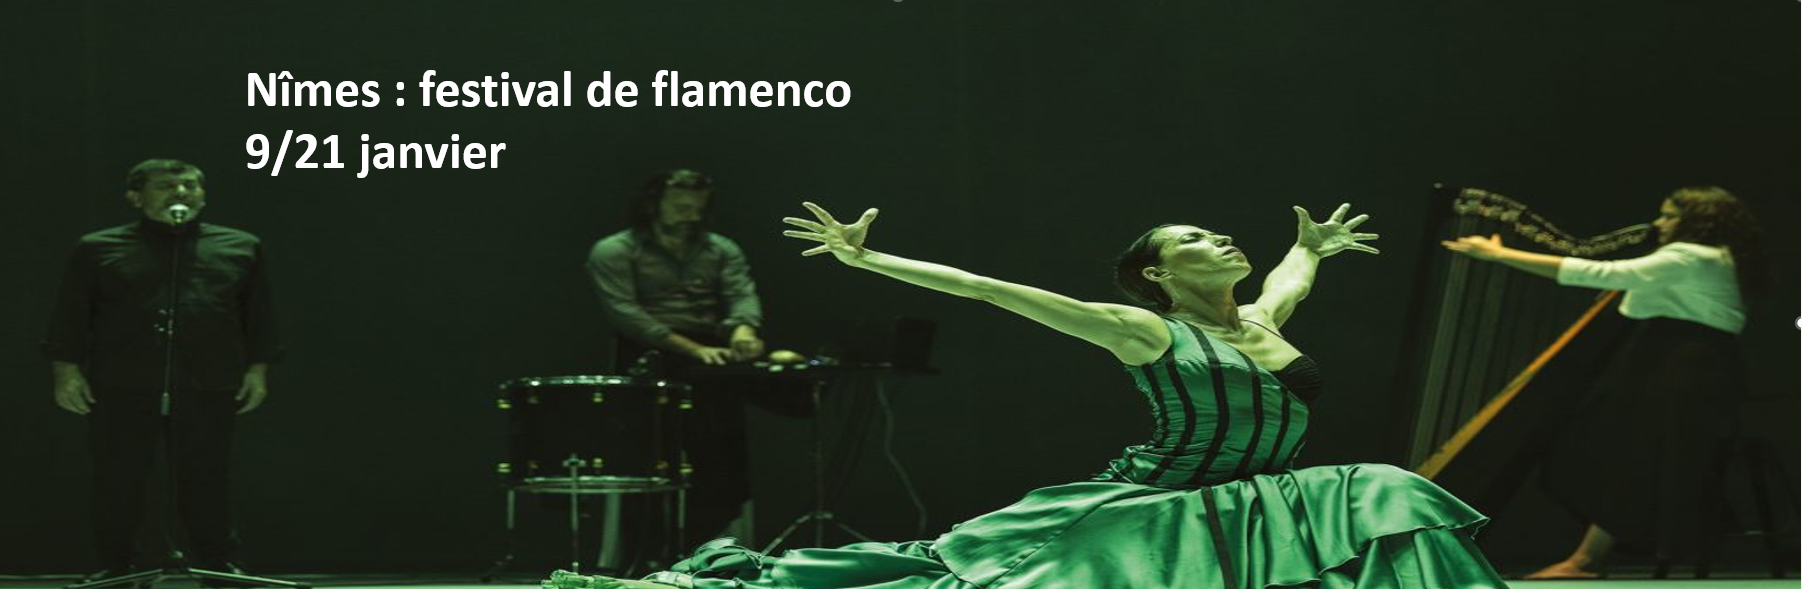 nimes-festival-de-flamenco-du-9-au-21-janvier